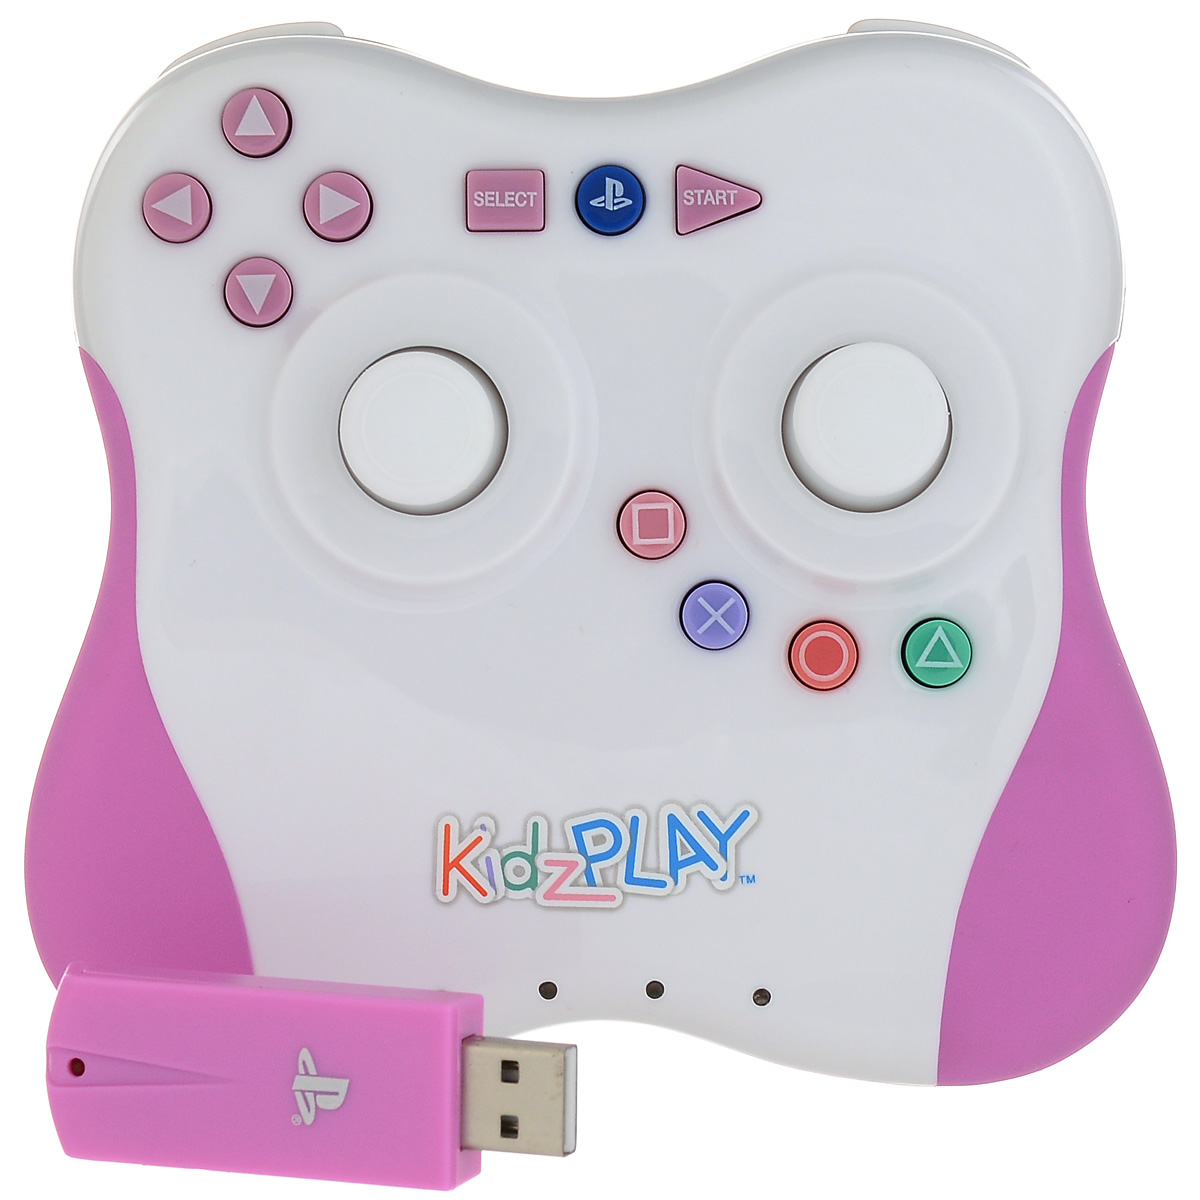 Детский беспроводной контроллер Kidz Play Adventure для PS3 (розовый)